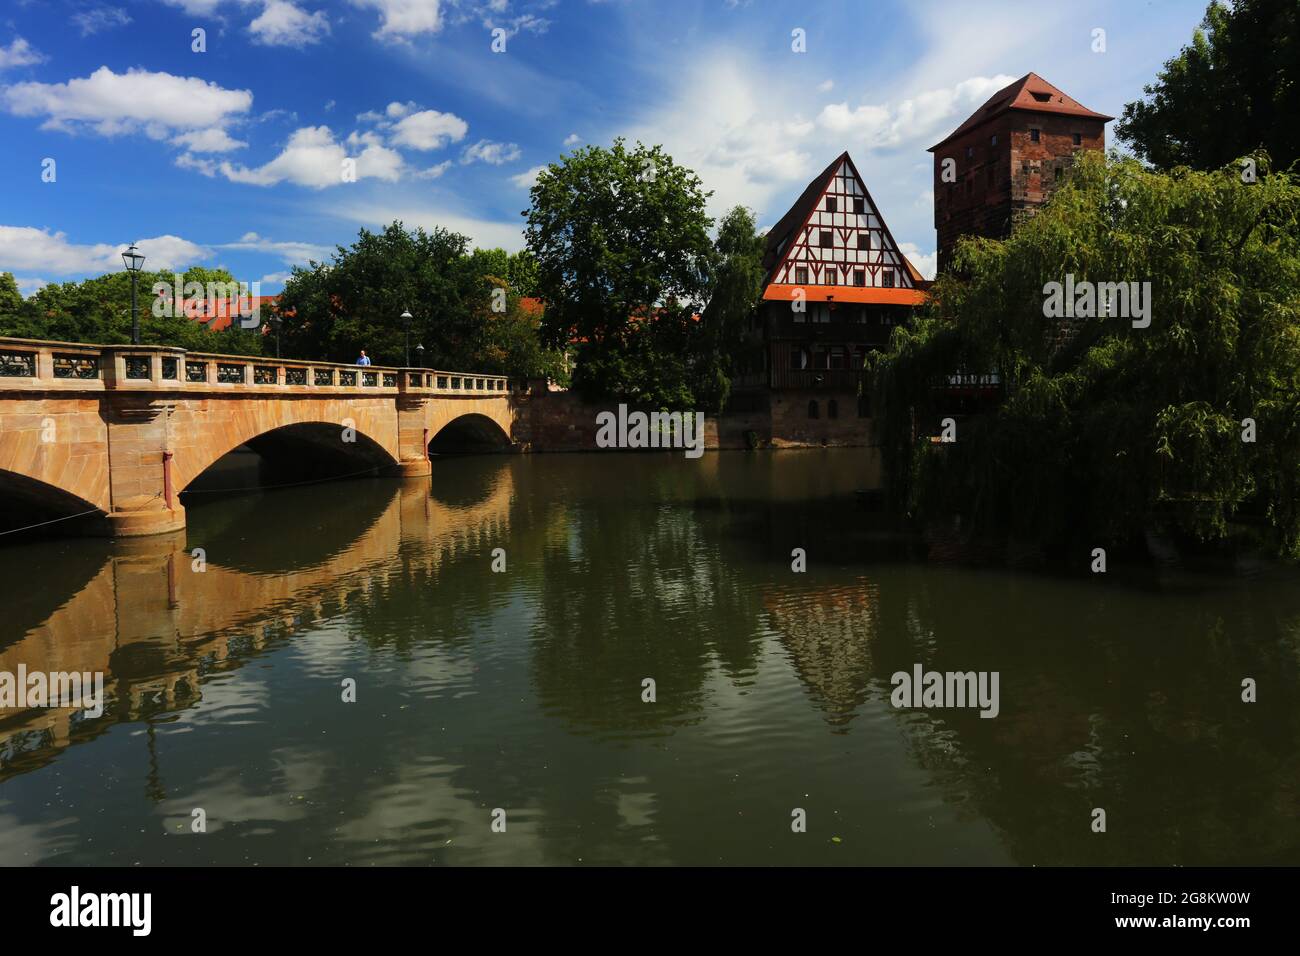 Nürnberg Altstadt oder Innenstadt - Ufer des Fluss Pegnitz, mit Brücke und mittelalterlichen Fachwerkhaus Deutschland Banque D'Images